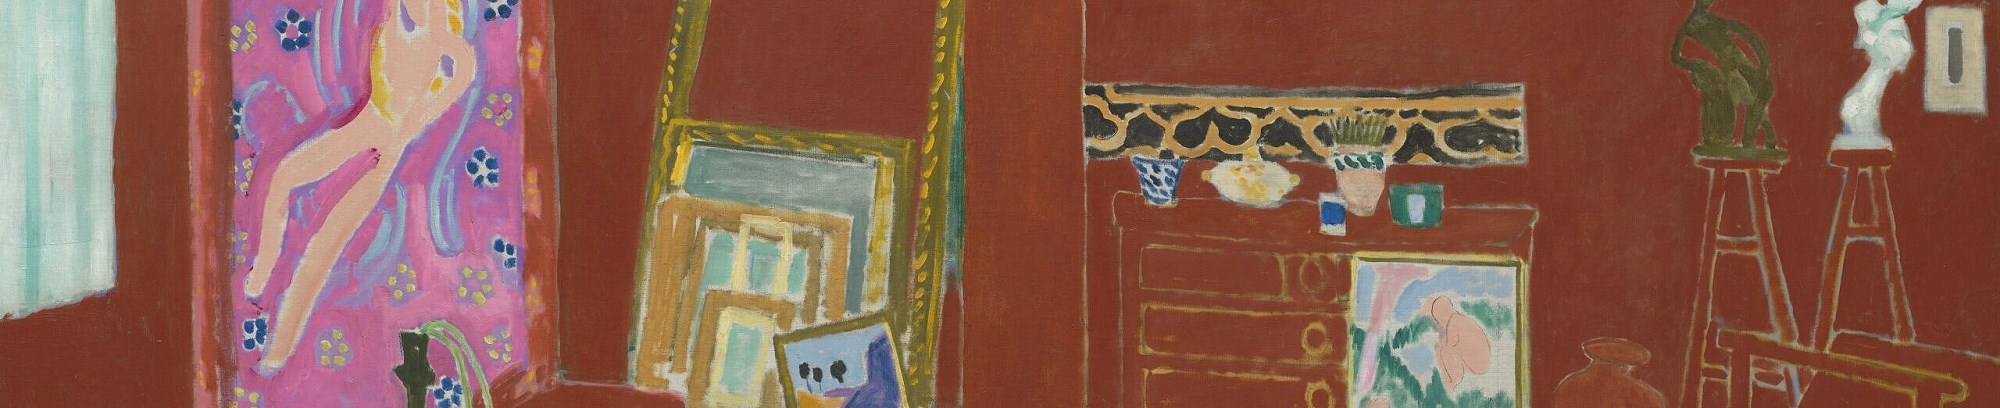 6 aktuelle udstillinger - Matisse SMK Red-studio-PRESSEFOTO-scaled @SMK